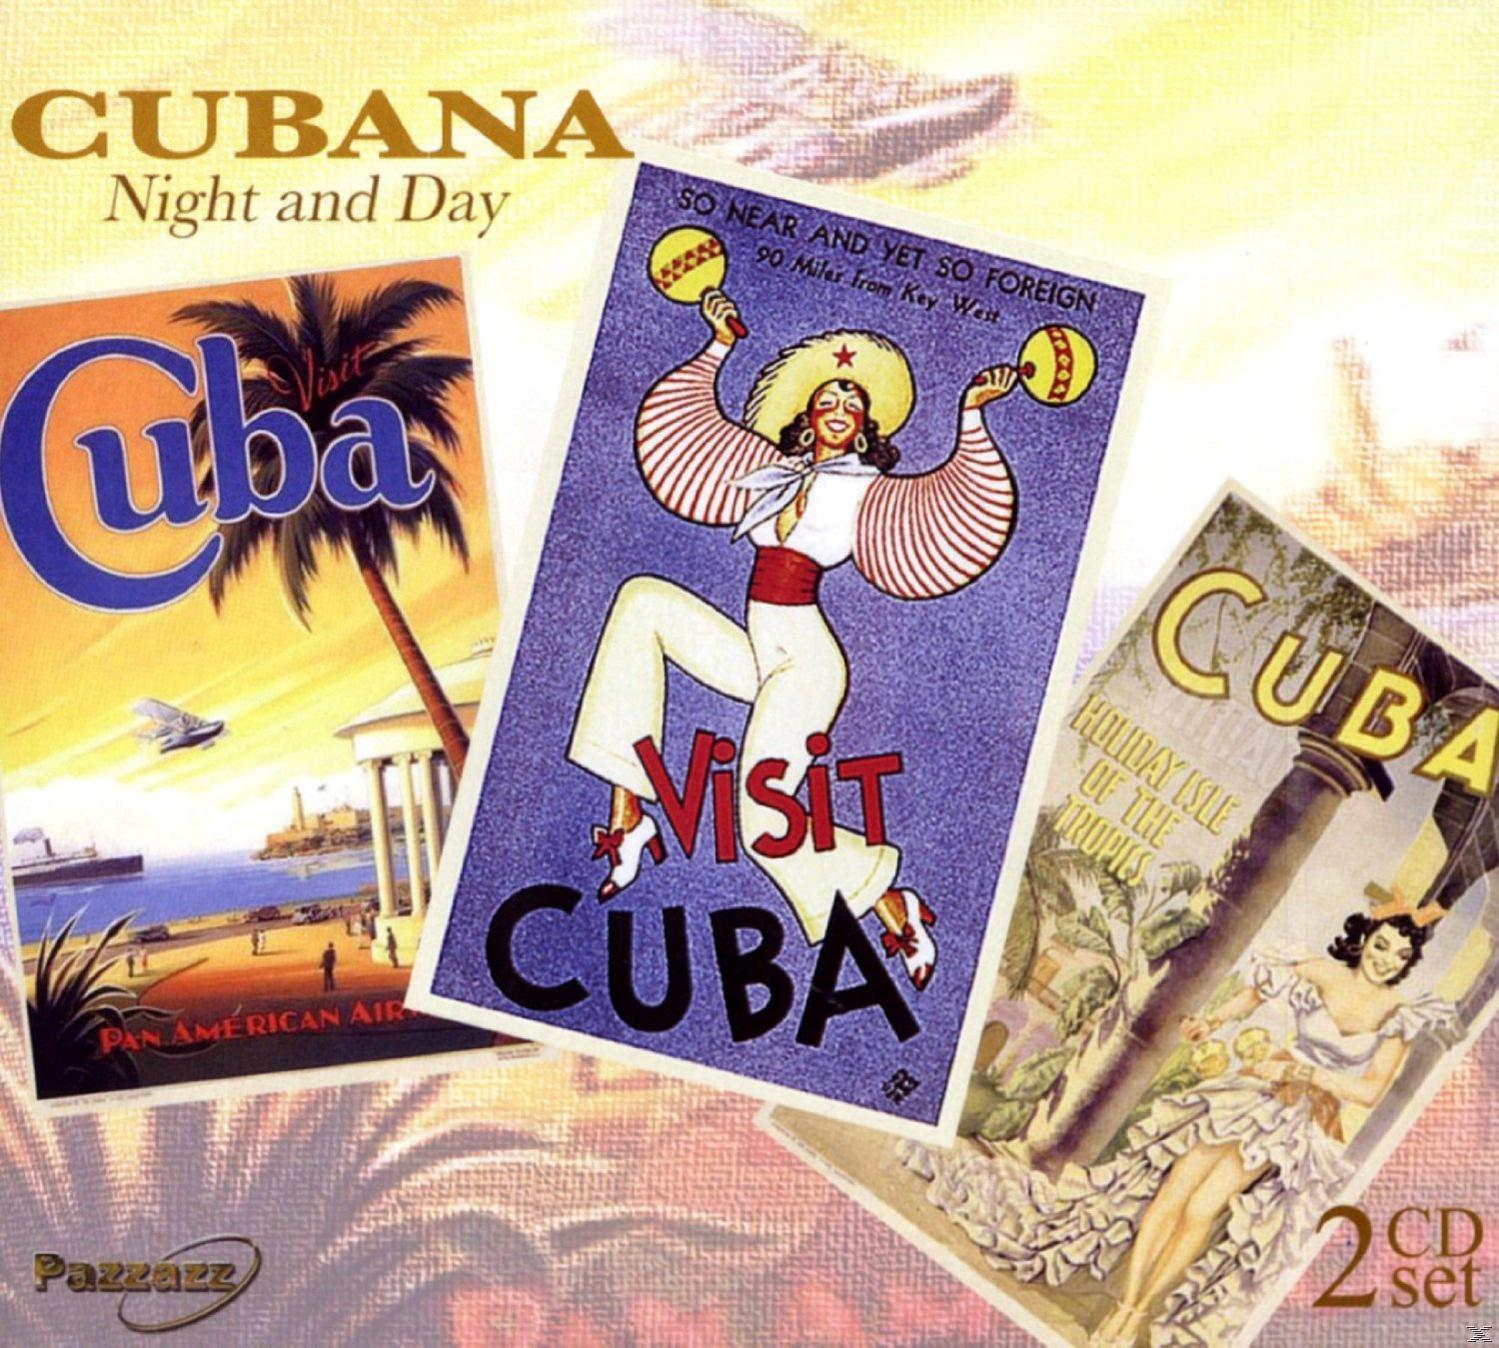 VARIOUS - Cubana Night And Day - (CD)